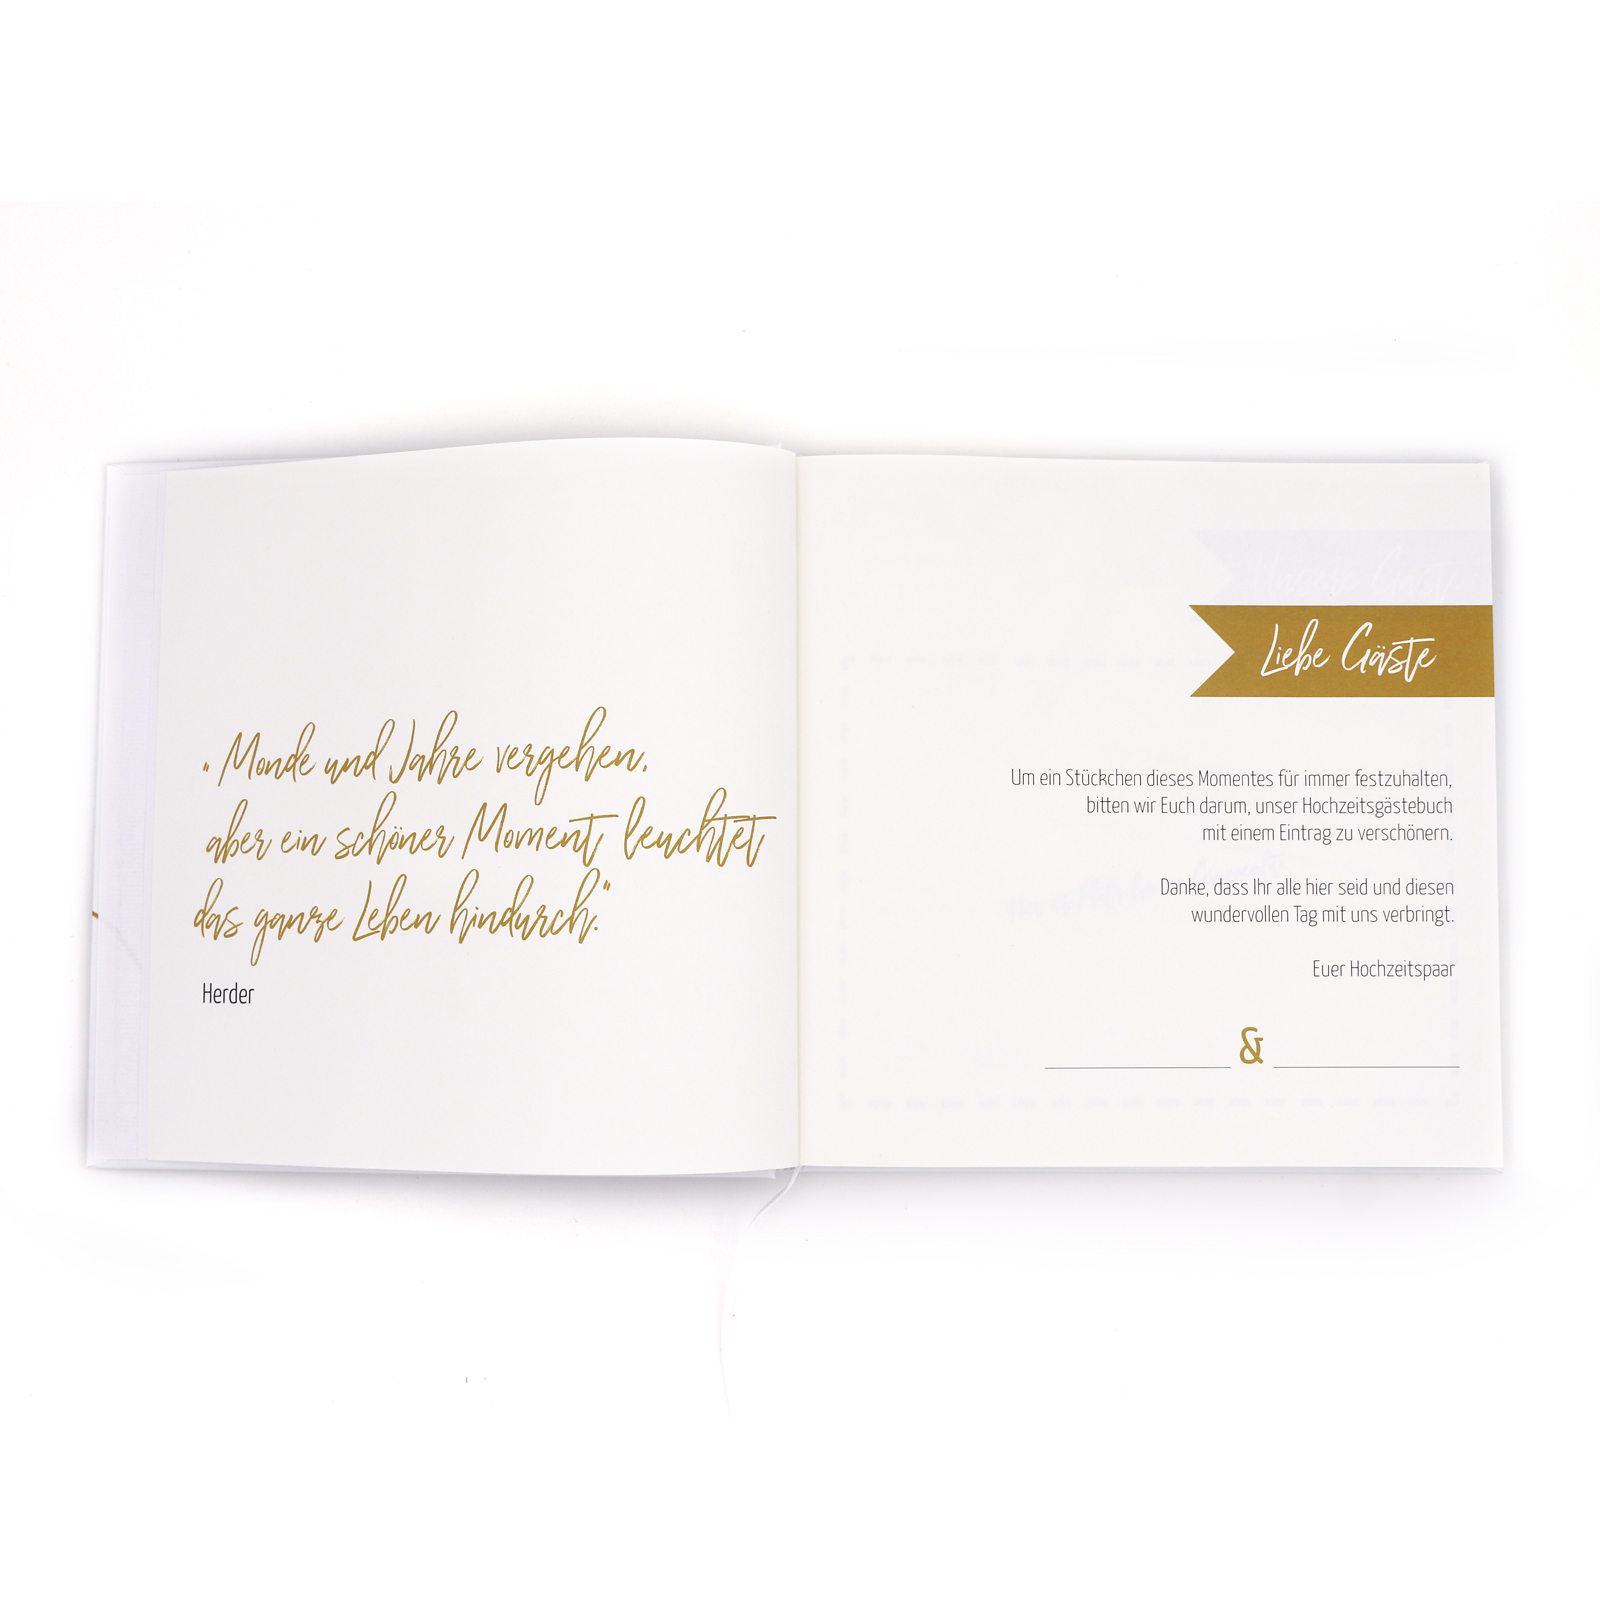 Gästebuch Hochzeit mit Fragen >Golden< - weiß - Hardcover + Fadenheftung - 120 Seiten